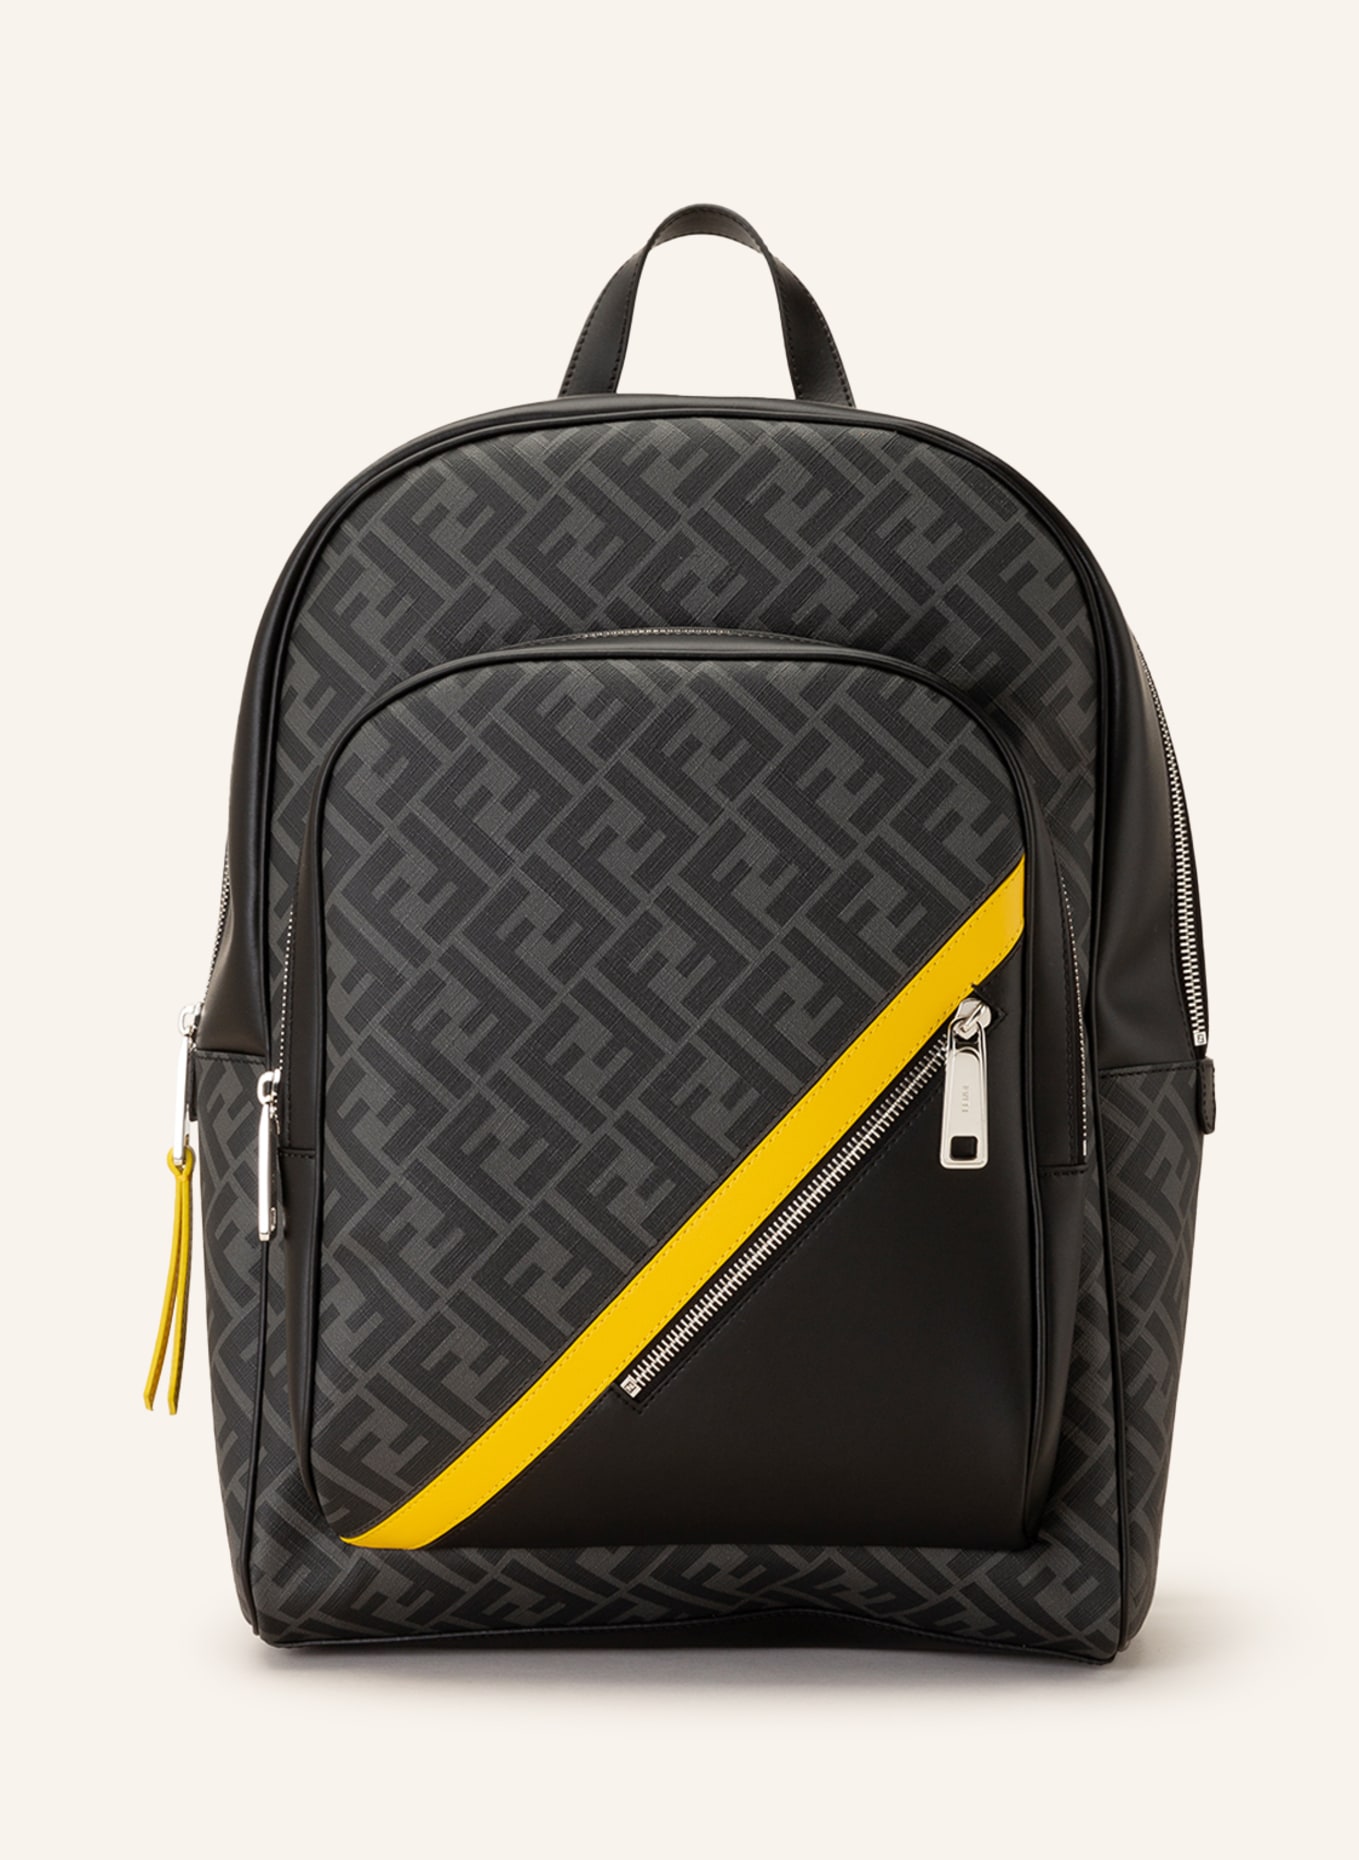 FENDI Saffiano backpack, Color: DARK GRAY/ BLACK (Image 1)